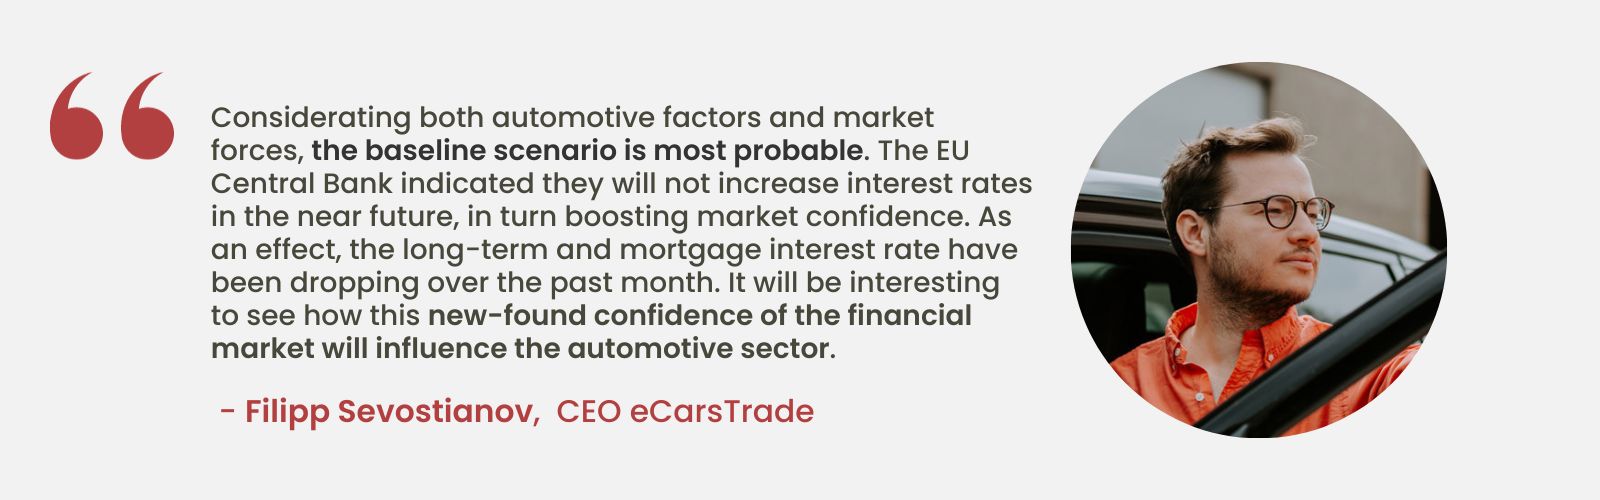 Analyse d'expert de Filipp Sevostianov, PDG d'eCarsTrade, discutant de l'impact des taux d'intérêt stables de l'UE sur la confiance du marché et des effets potentiels sur l'industrie automobile.